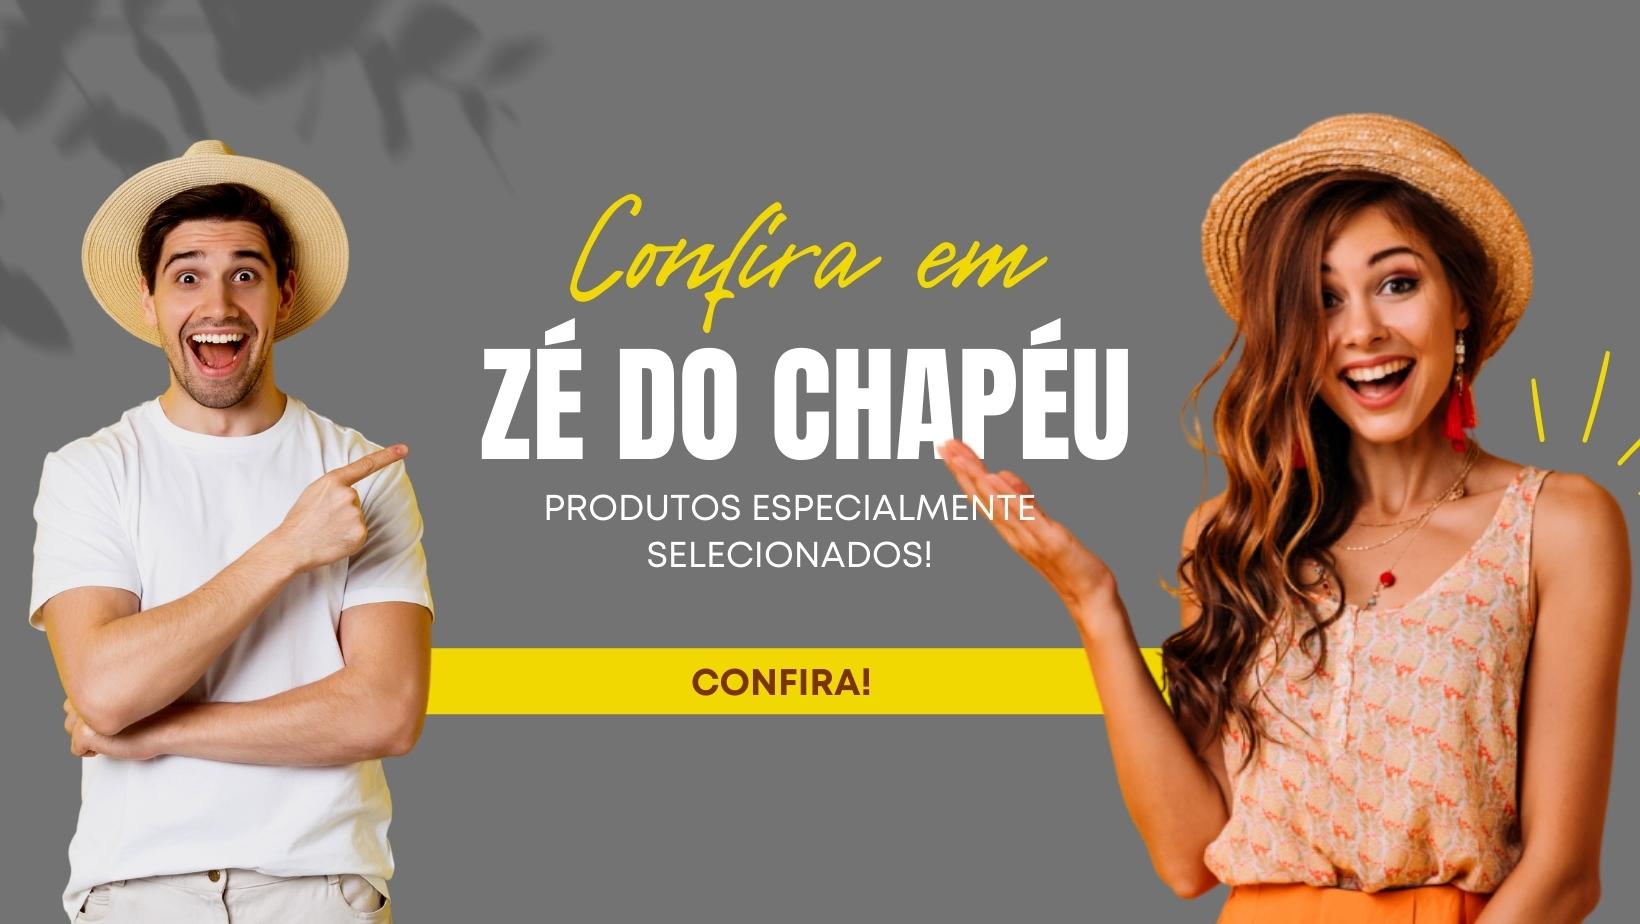 (c) Zedochapeu.com.br